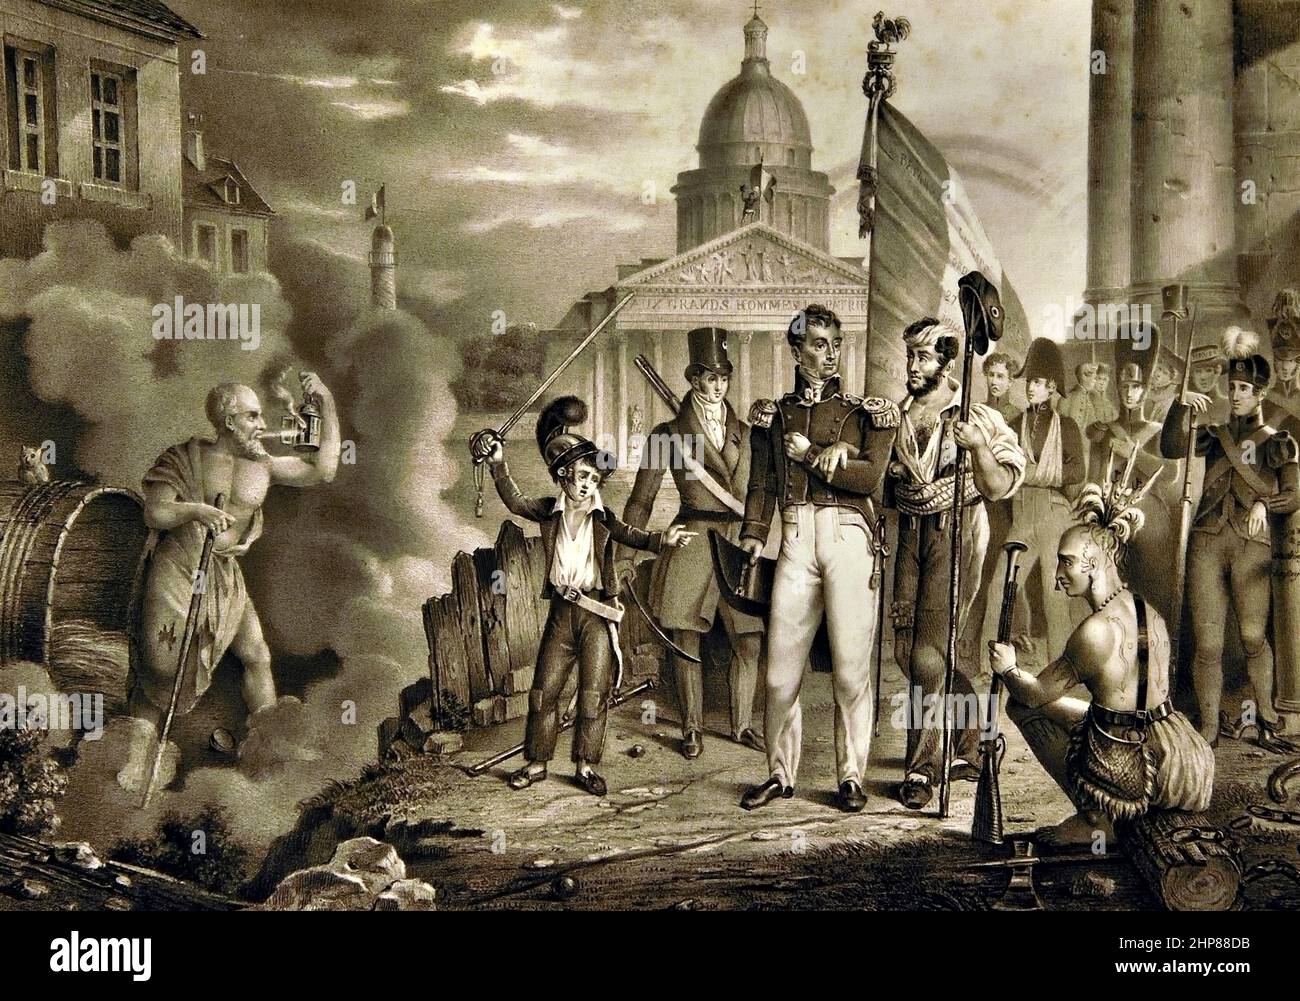 La Fayette lotta per la libertà di due mondi metà 19th secolo Francia francese ( Gilbert du Motier, Marquis de Lafayette (1757–1834), generale francese e generale americano della guerra rivoluzionaria anche prominente nella Rivoluzione francese.) Foto Stock